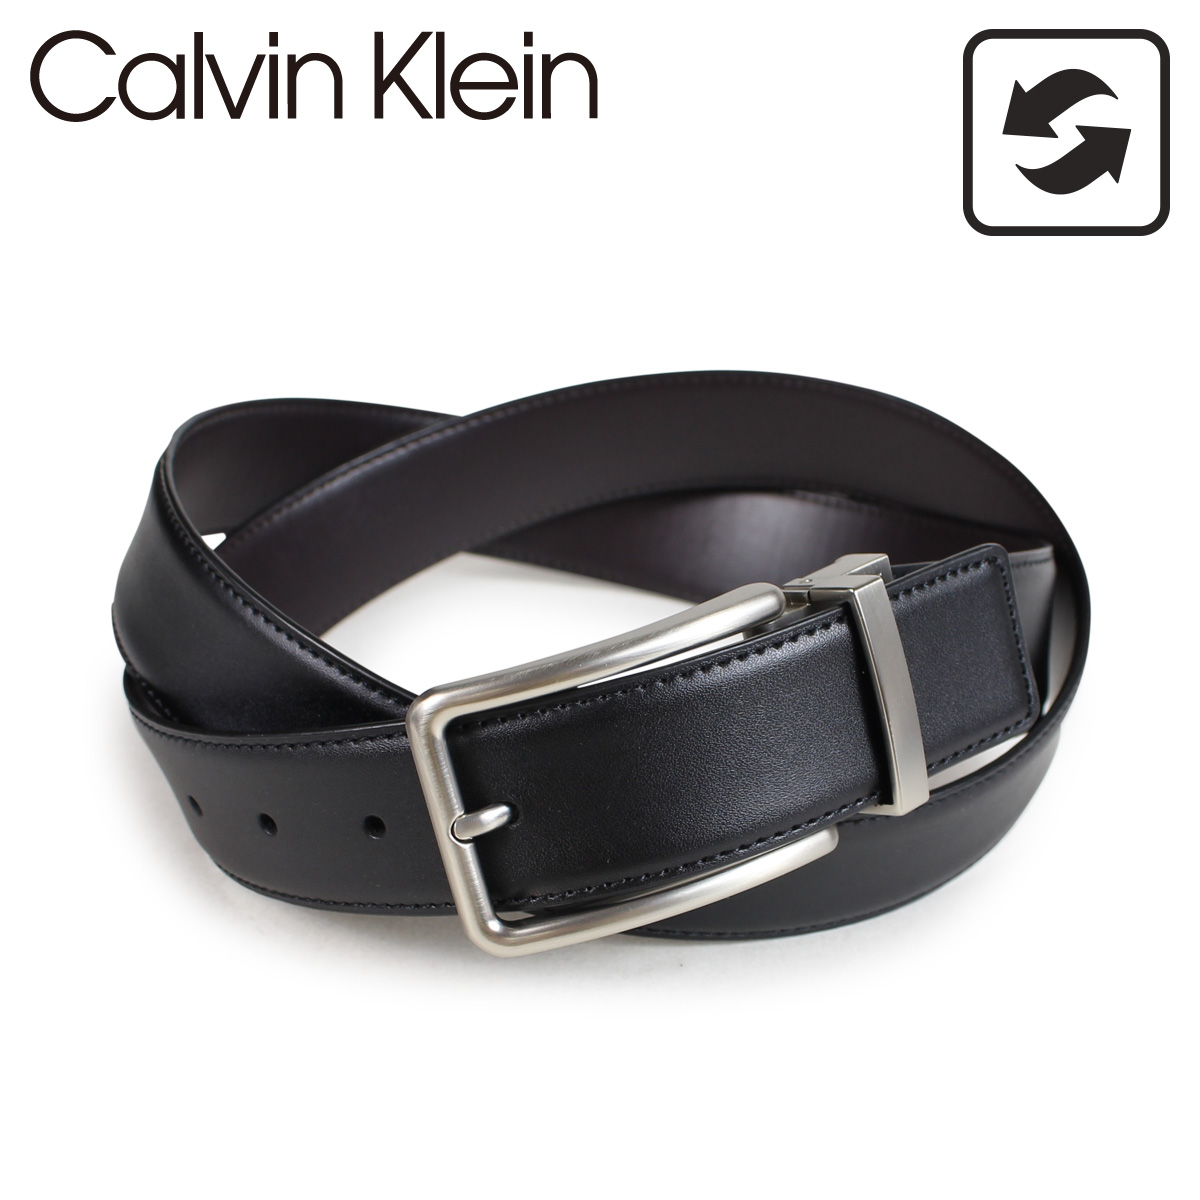 calvin klein belt and buckle set